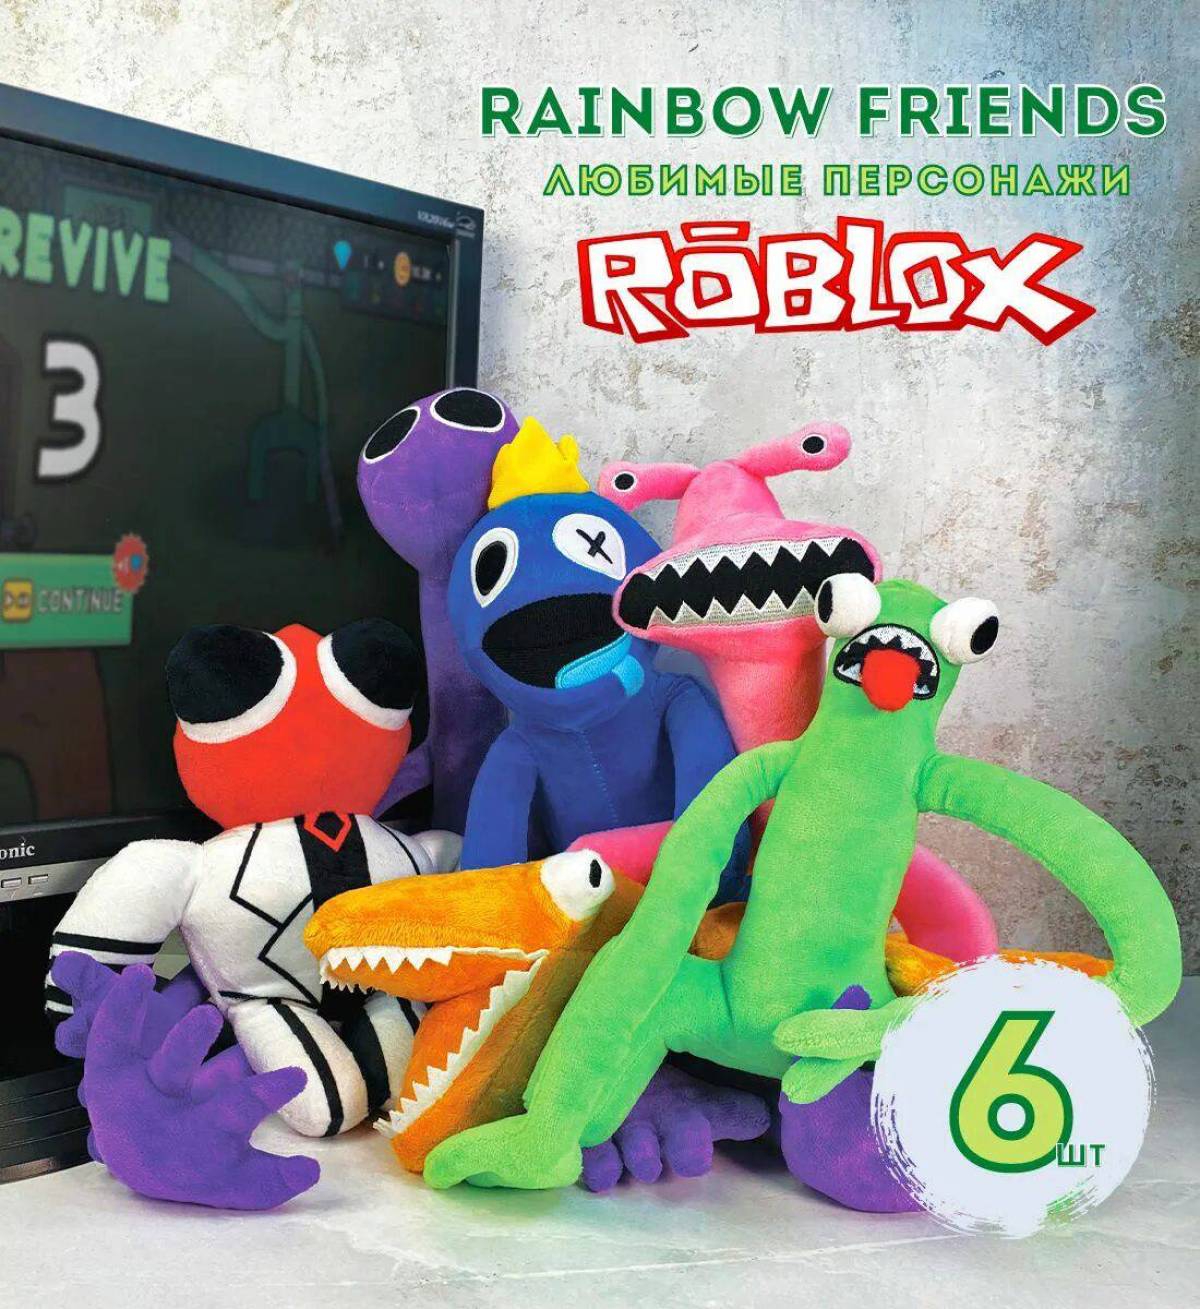 Розовый из радужных друзей. Игрушки Rainbow friends. Радужные друзья игрушки мягкие. Мягкие игрушки Rainbow friends из Roblox. Мягкая игрушка Рейнбоу френдс.